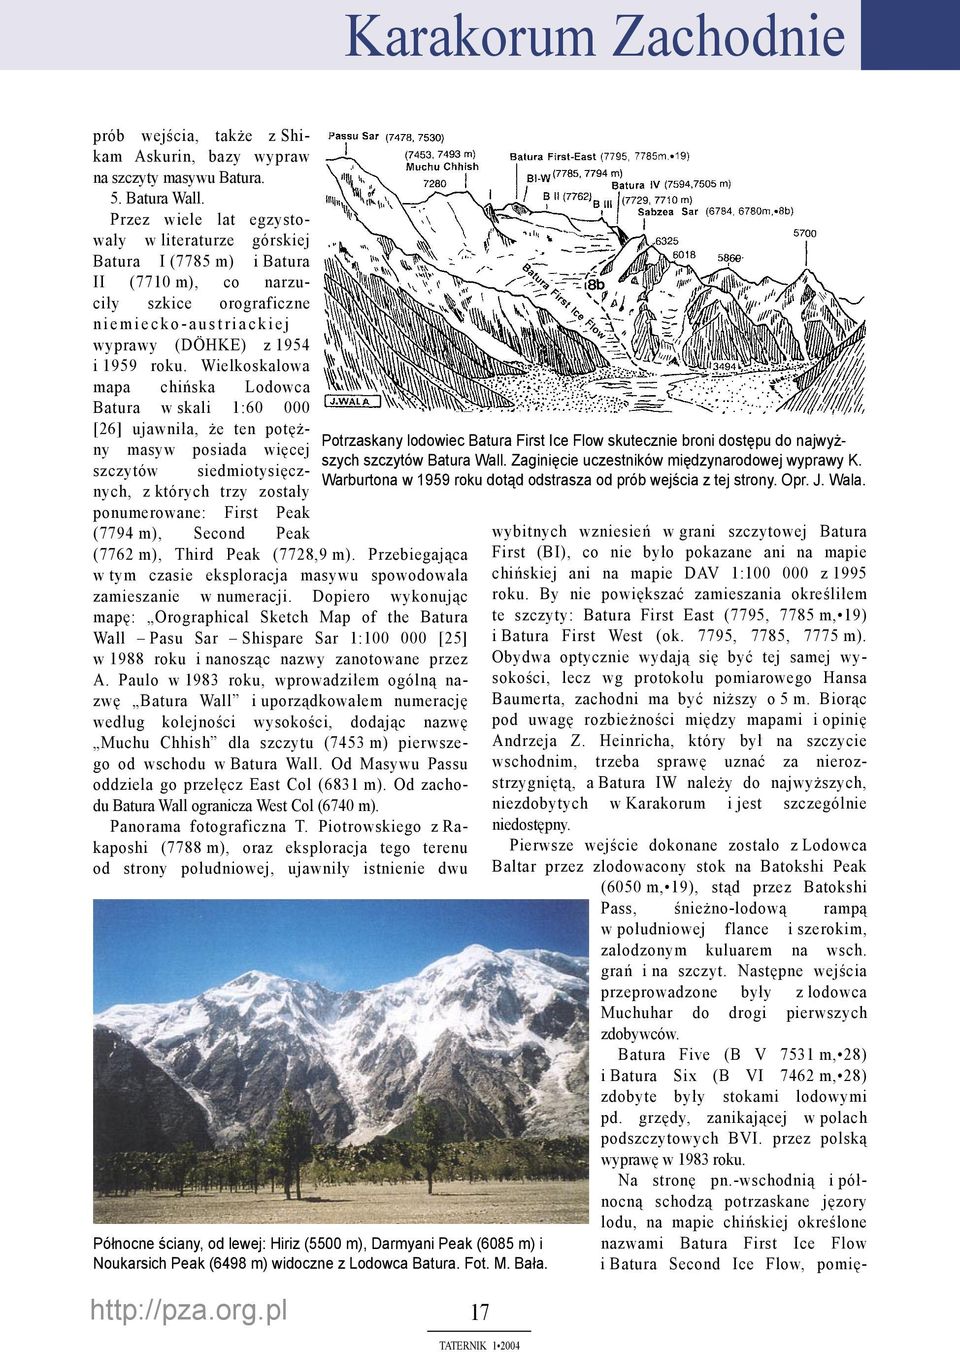 roku. Wielkoskalowa mapa chińska Lodowca Batura w skali 1:60 000 [26] ujawniła, że ten potężny masyw posiada więcej szczytów siedmiotysięcznych, z których trzy zostały ponumerowane: First Peak (7794